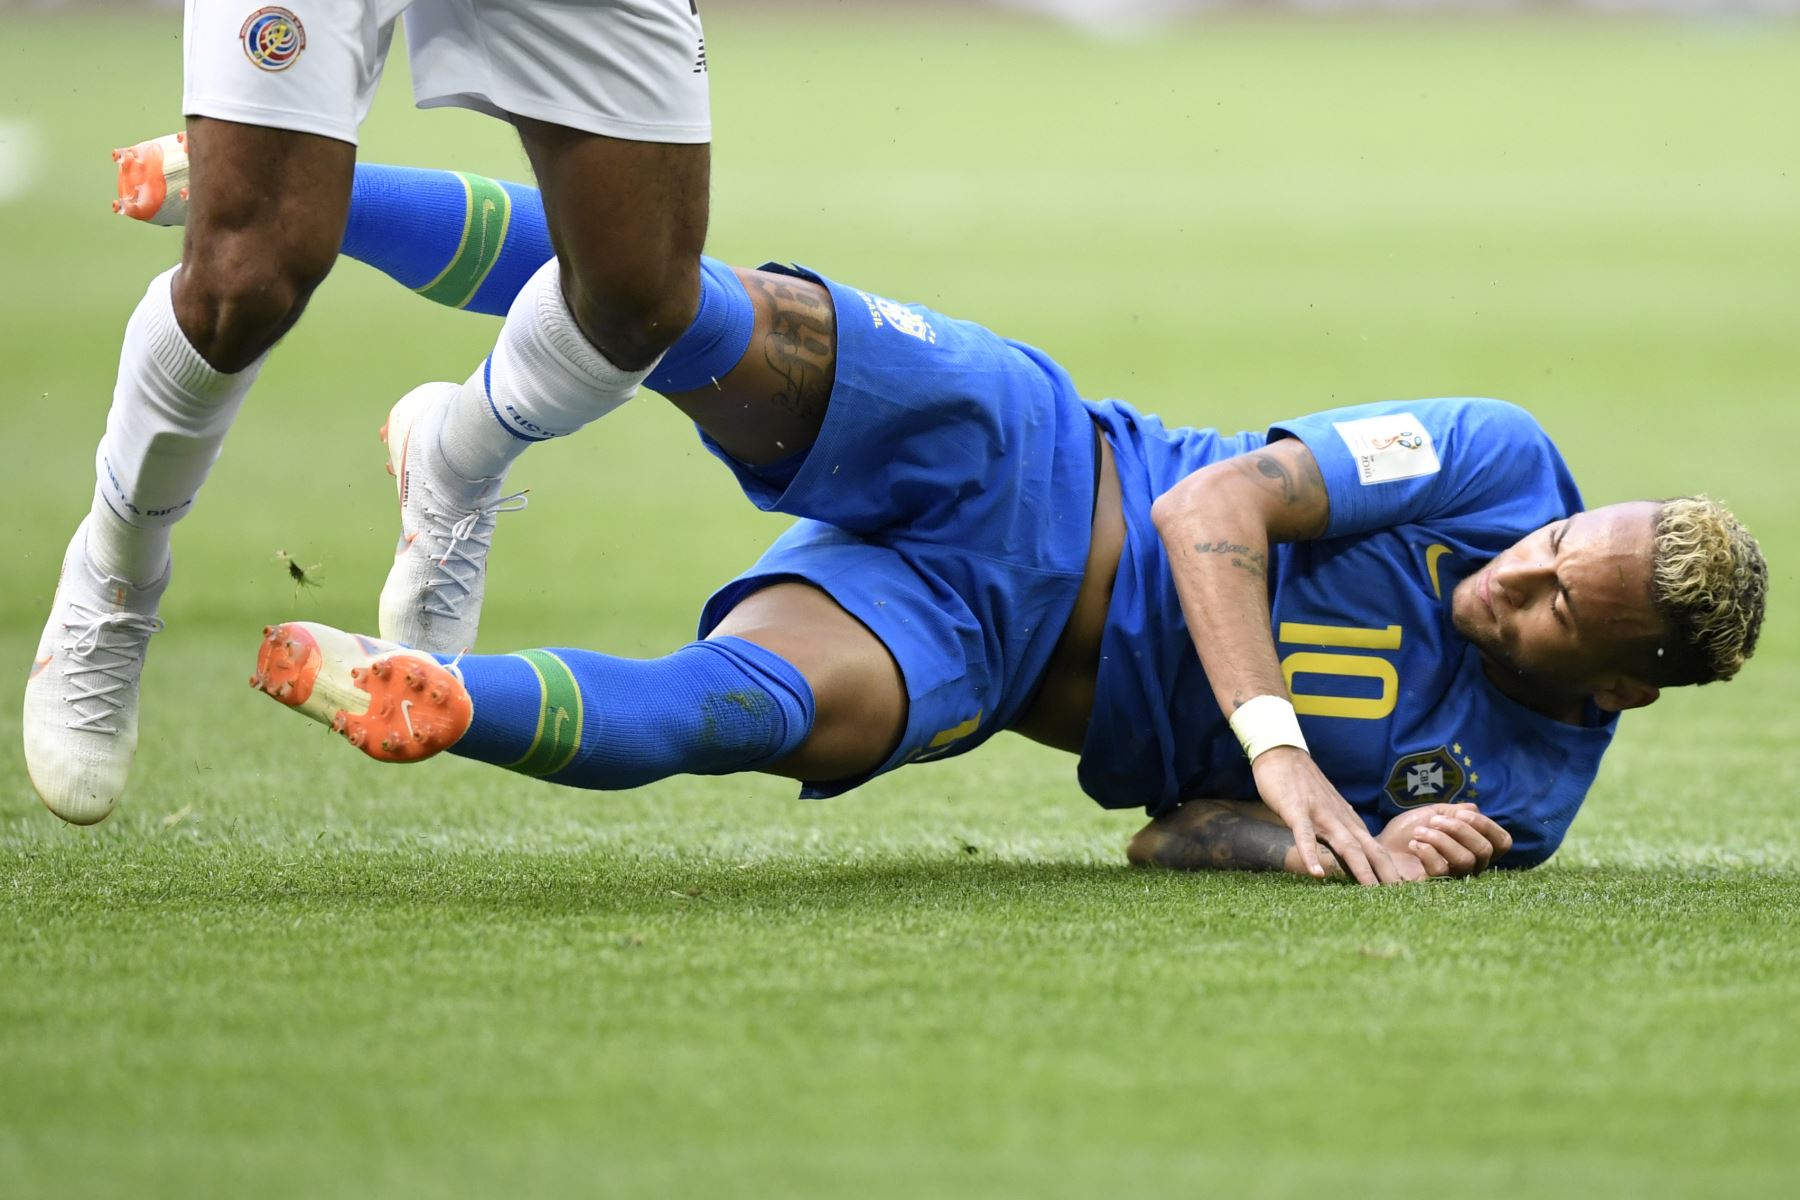 El alero Neymar de Brasil cae en el campo durante el partido de fútbol de la Copa del Mundo Rusia 2018 Grupo E entre Brasil y Costa Rica en el Estadio de San Petersburgo en San Petersburgo el 22 de junio de 2018. / AFP